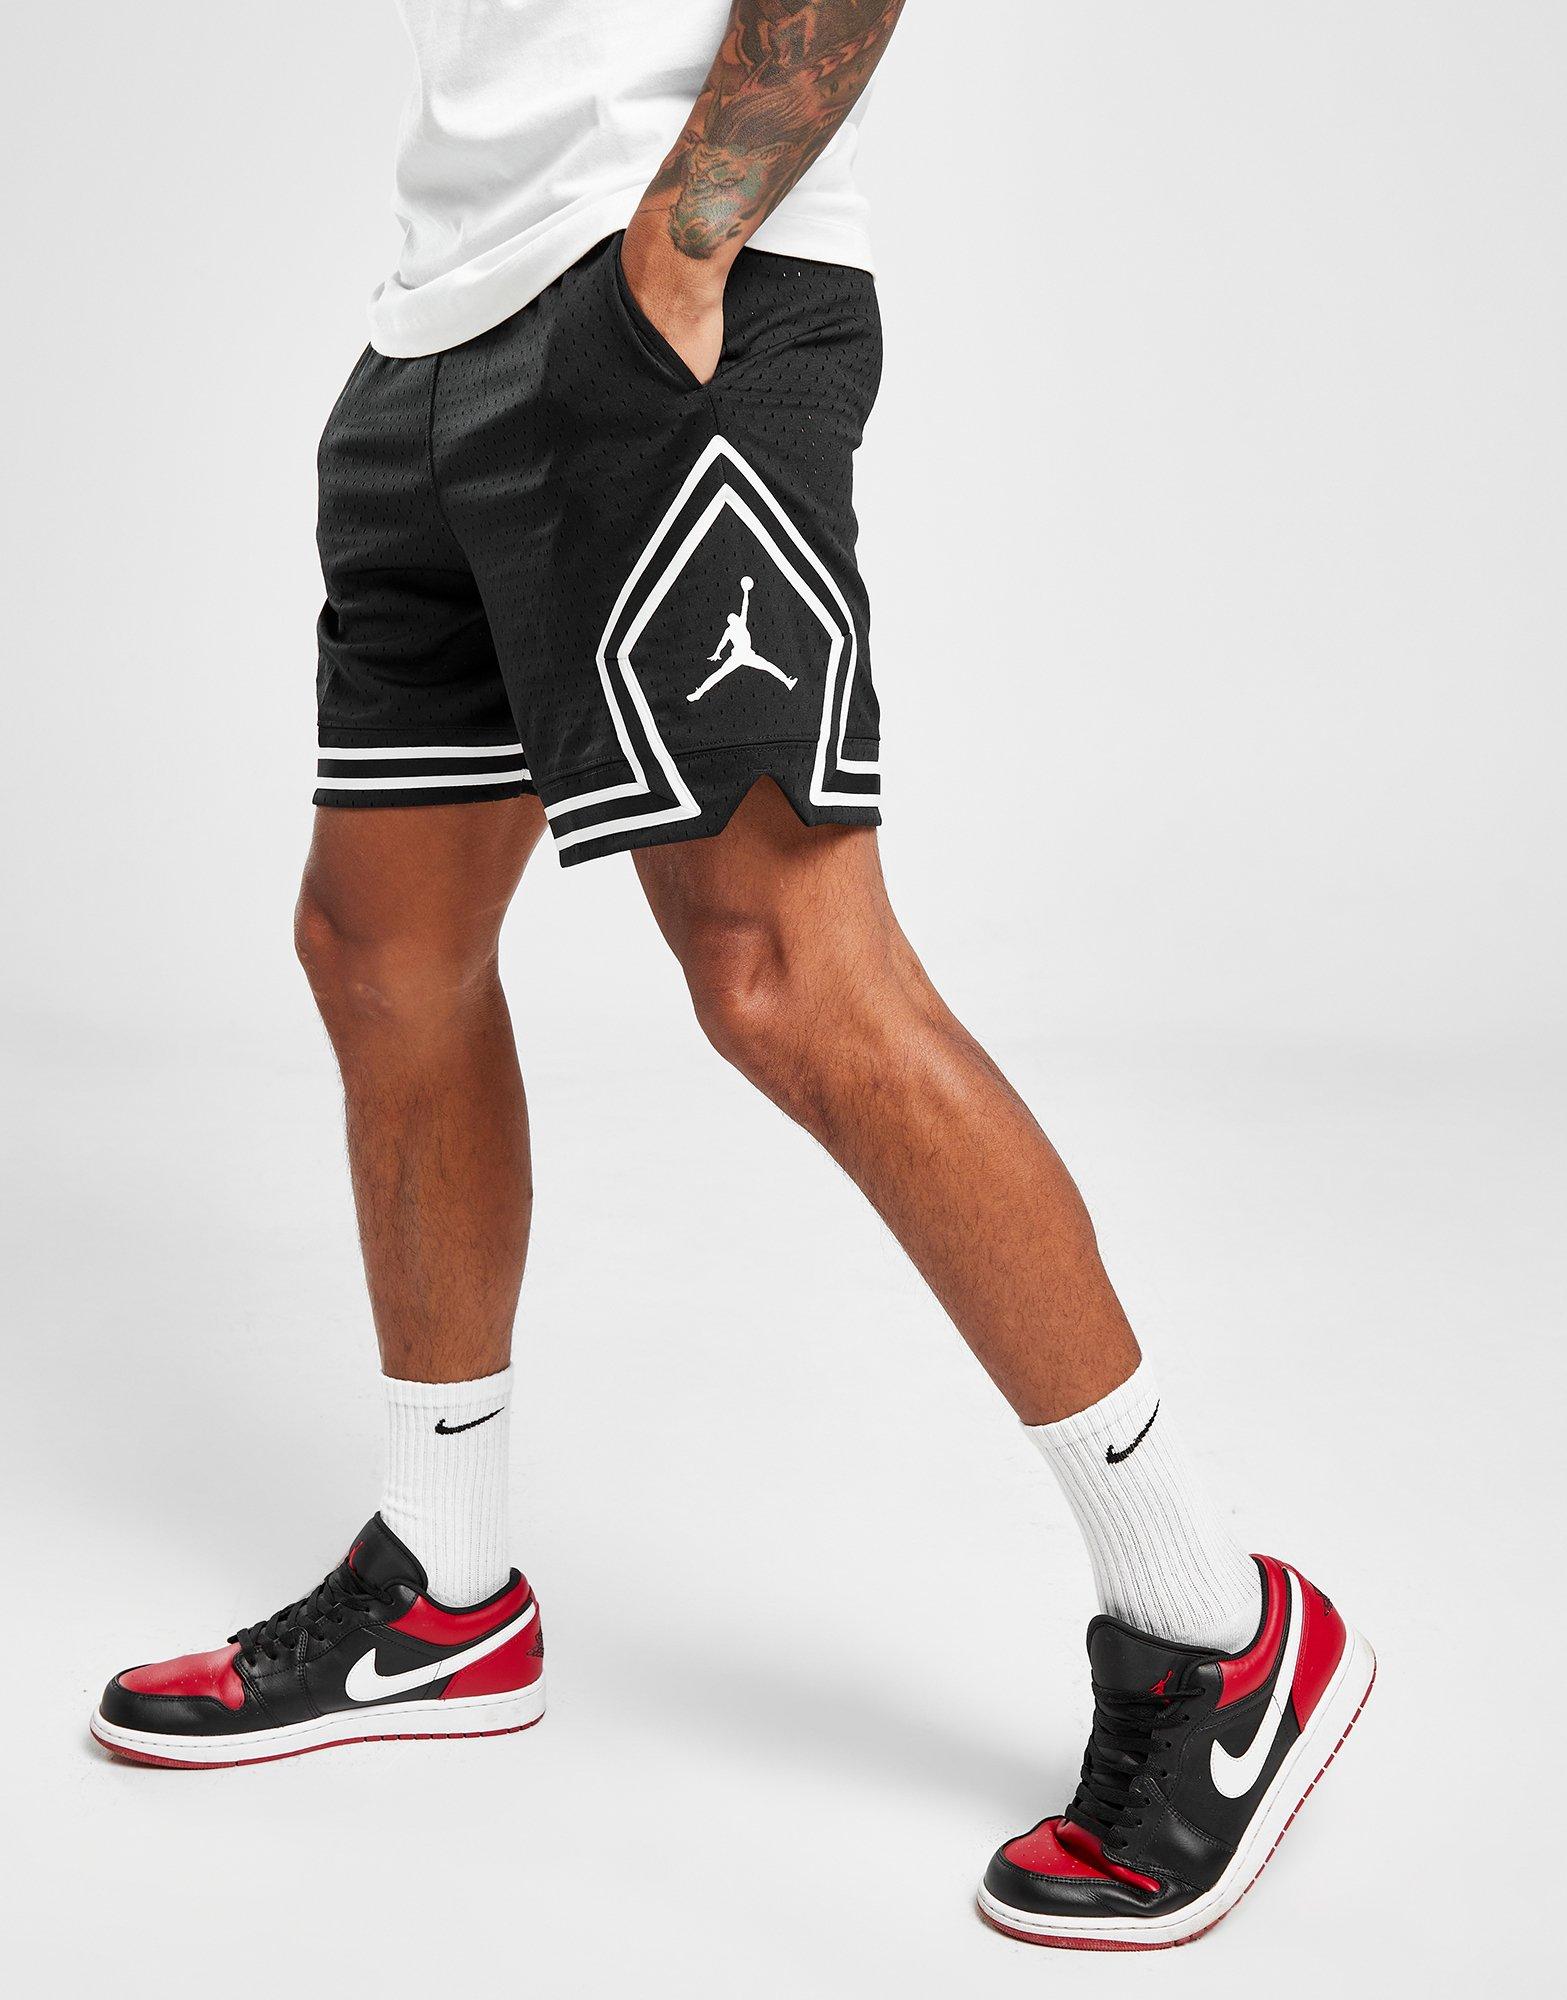 Pantalón Jordan - Negro - Pantalón Corto Hombre, Sprinter